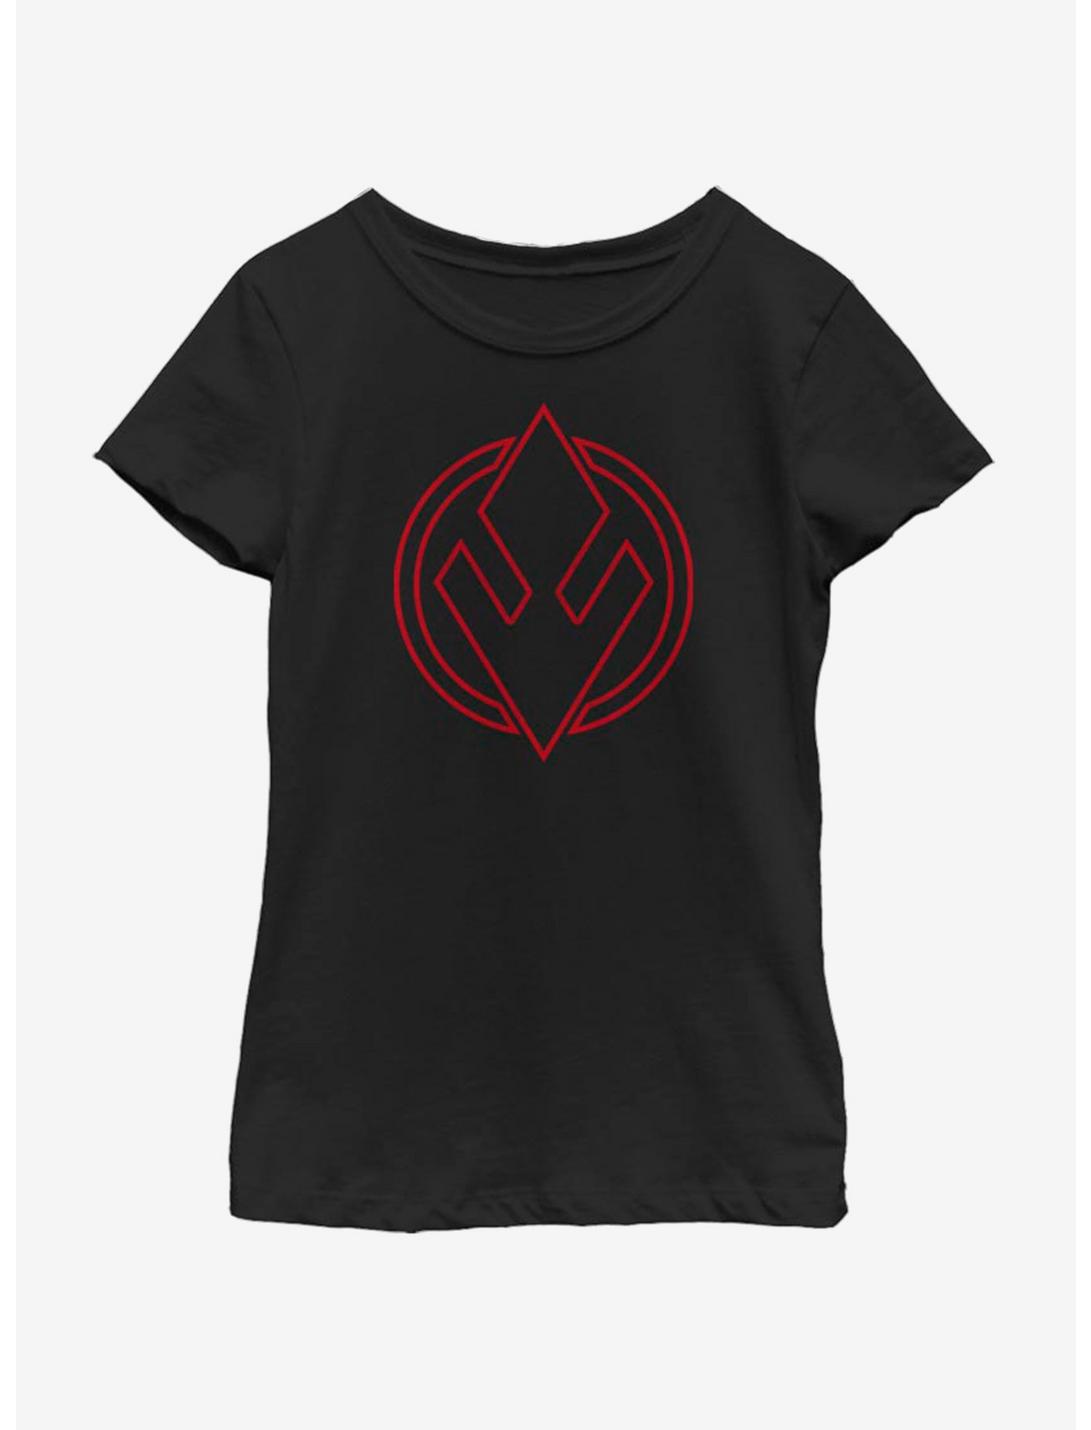 Star Wars The Rise Of Skywalker Sith Trooper Emblem Youth Girls T-Shirt, BLACK, hi-res